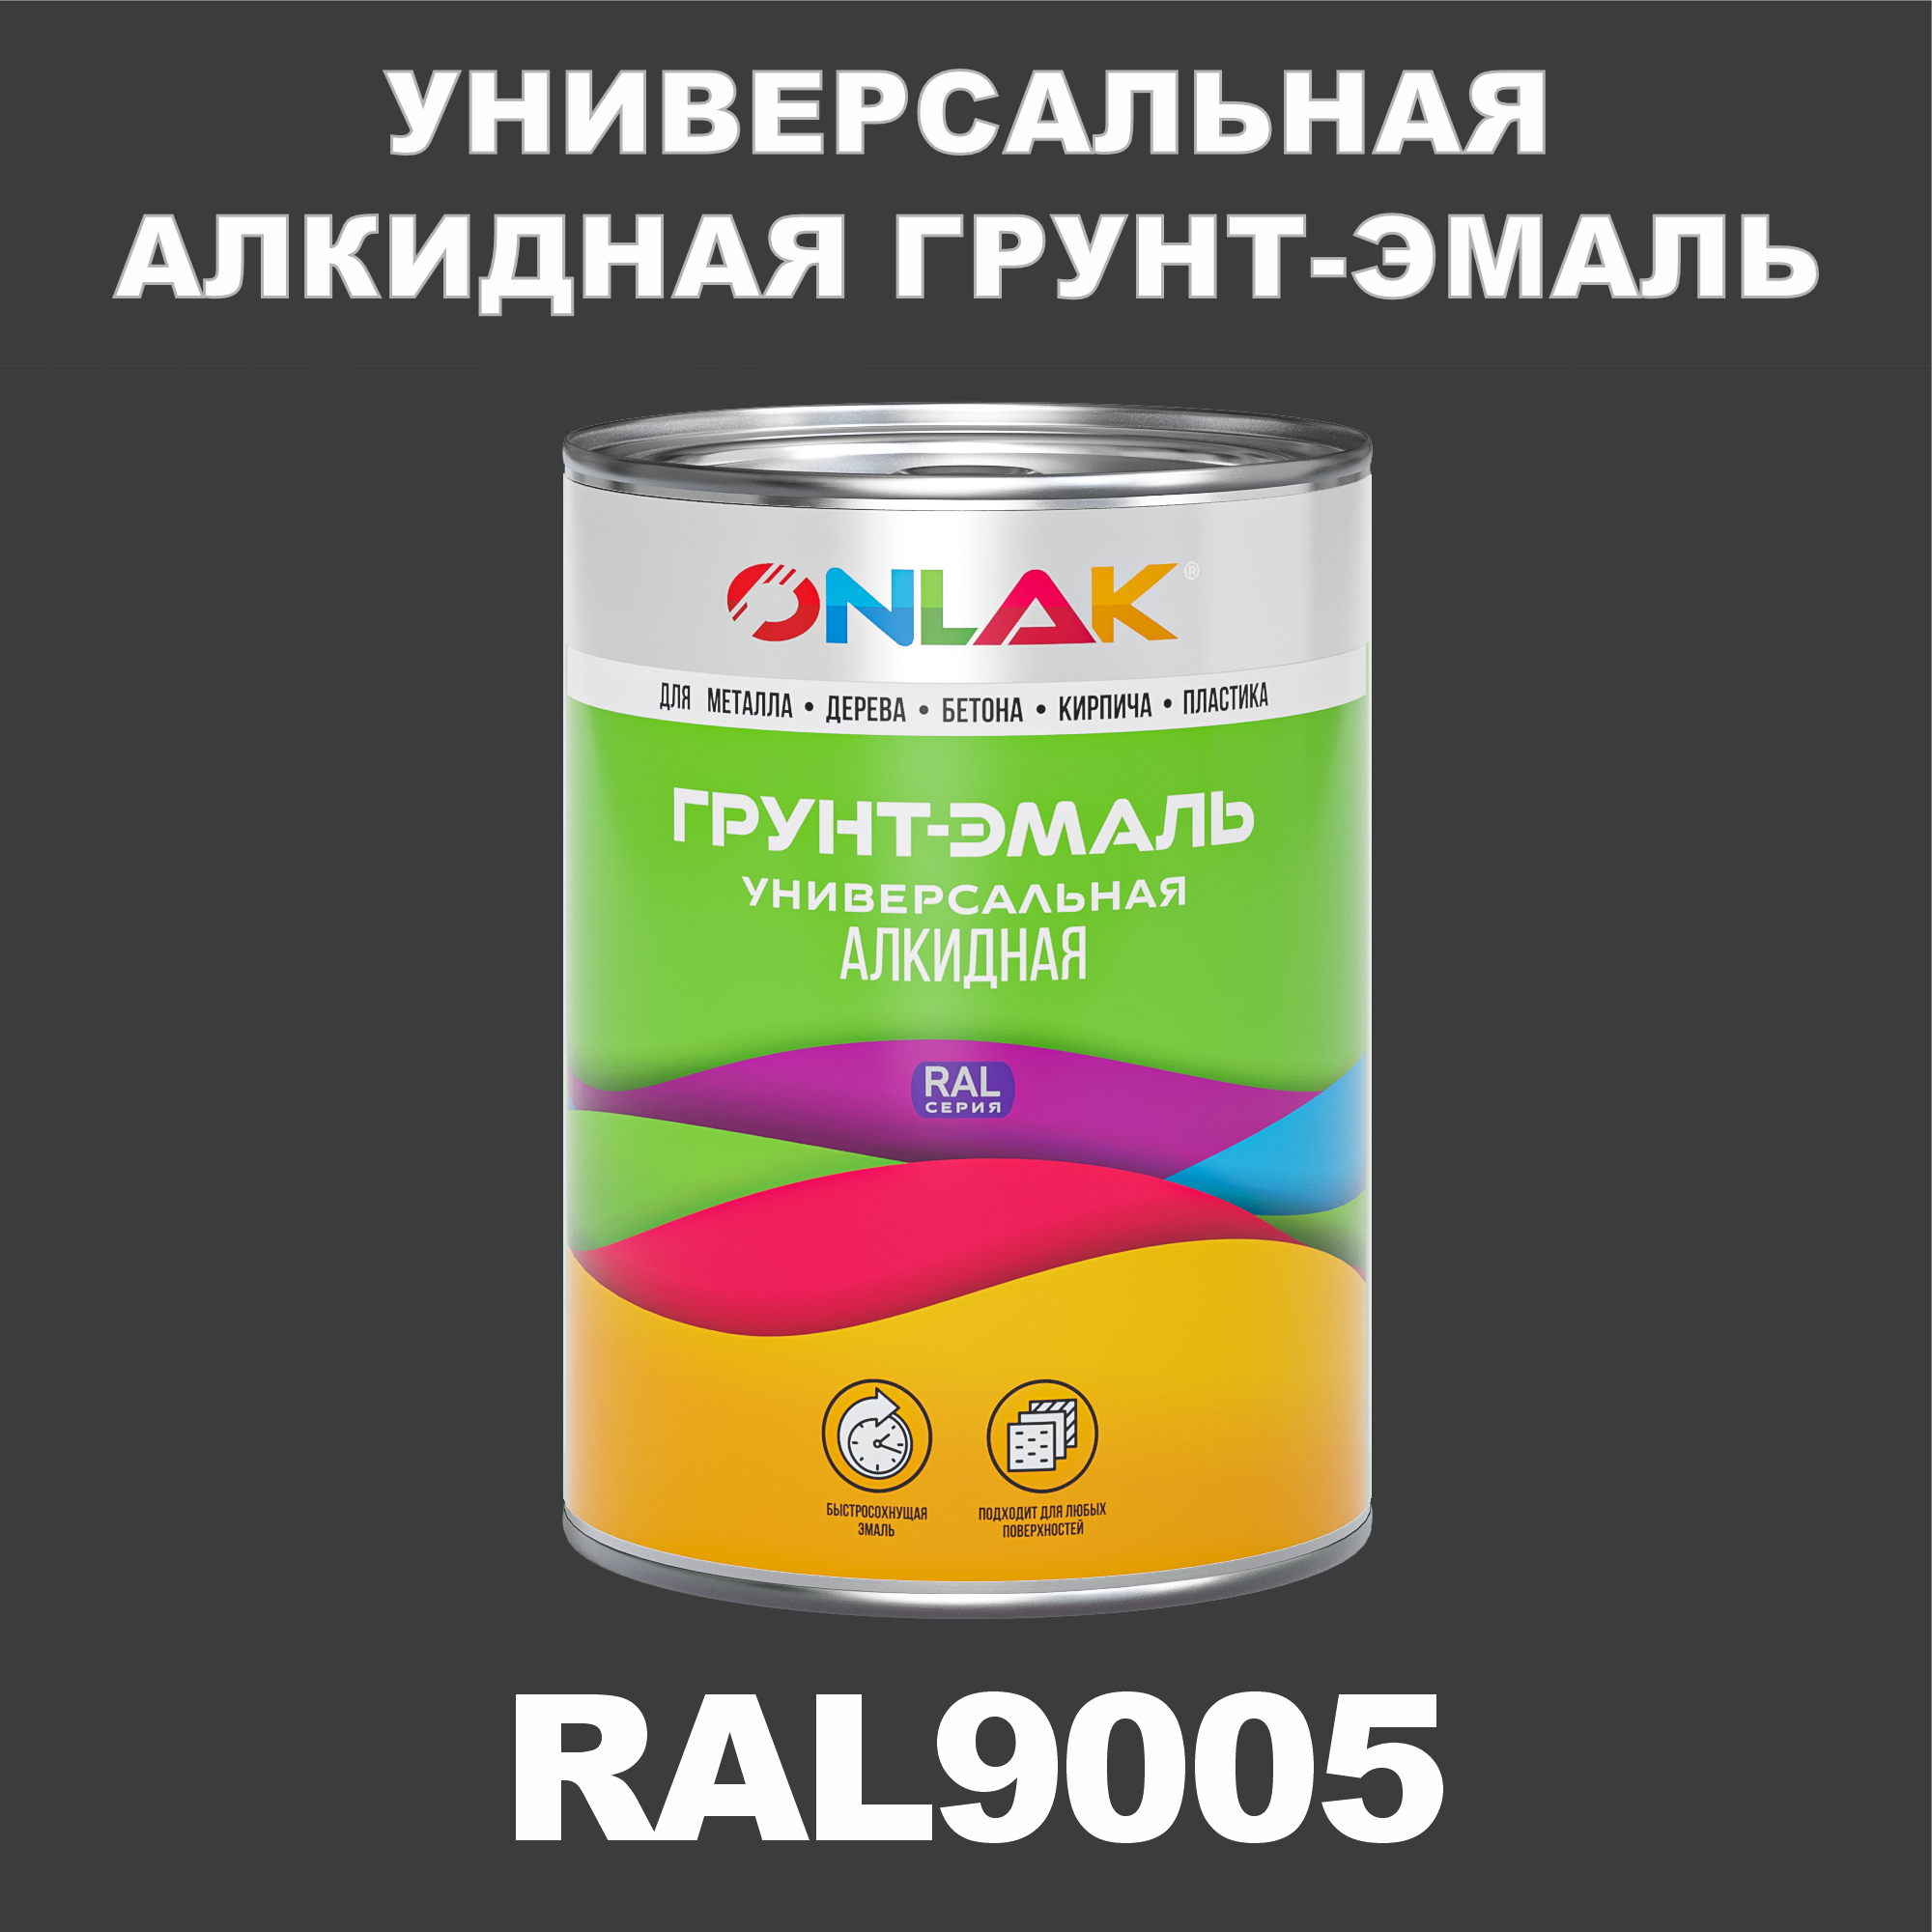 Грунт-эмаль ONLAK 1К RAL9005 антикоррозионная алкидная по металлу по ржавчине 1 кг грунт эмаль yollo по ржавчине алкидная синяя 0 9 кг